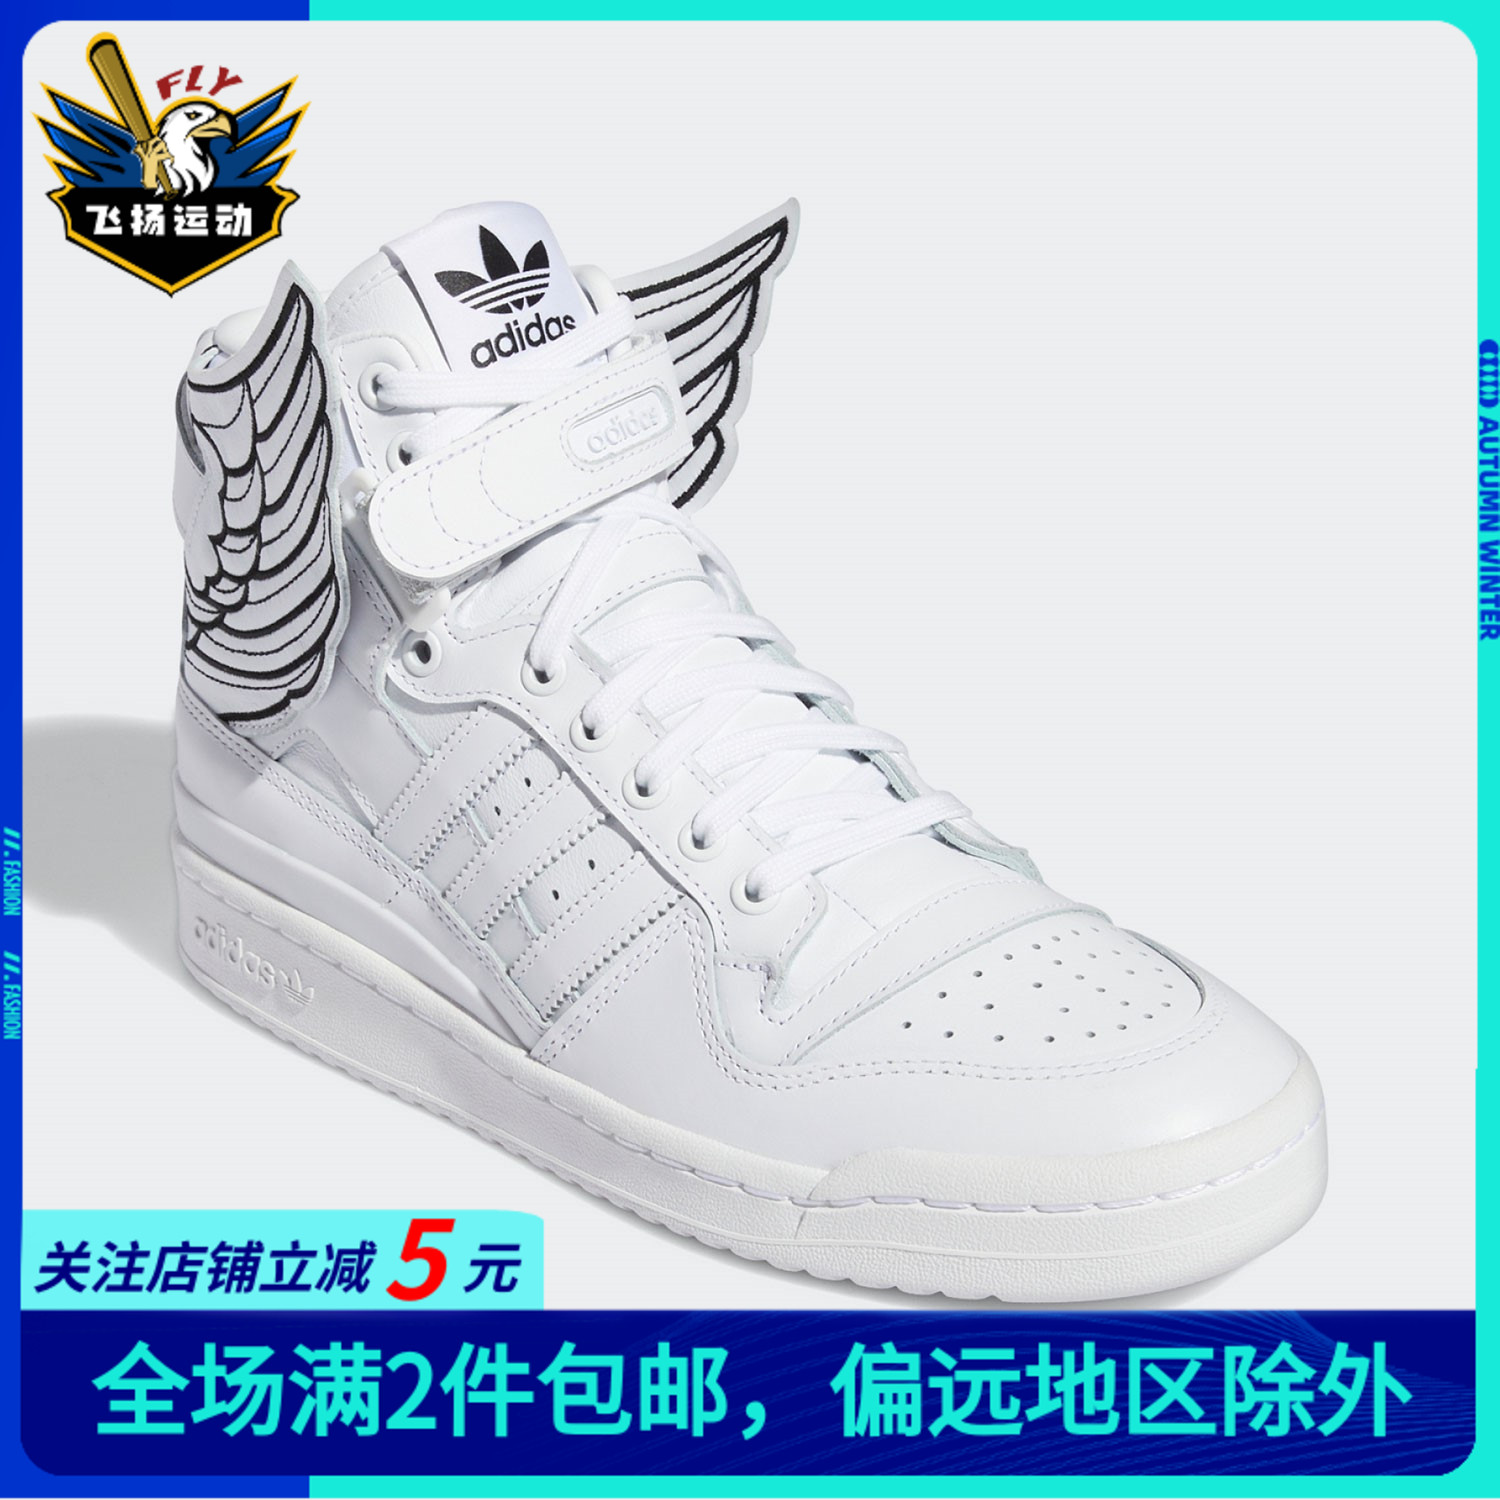 Adidas阿迪达斯三叶草男女板鞋翅膀高帮舒适运动新款休闲鞋GX9445